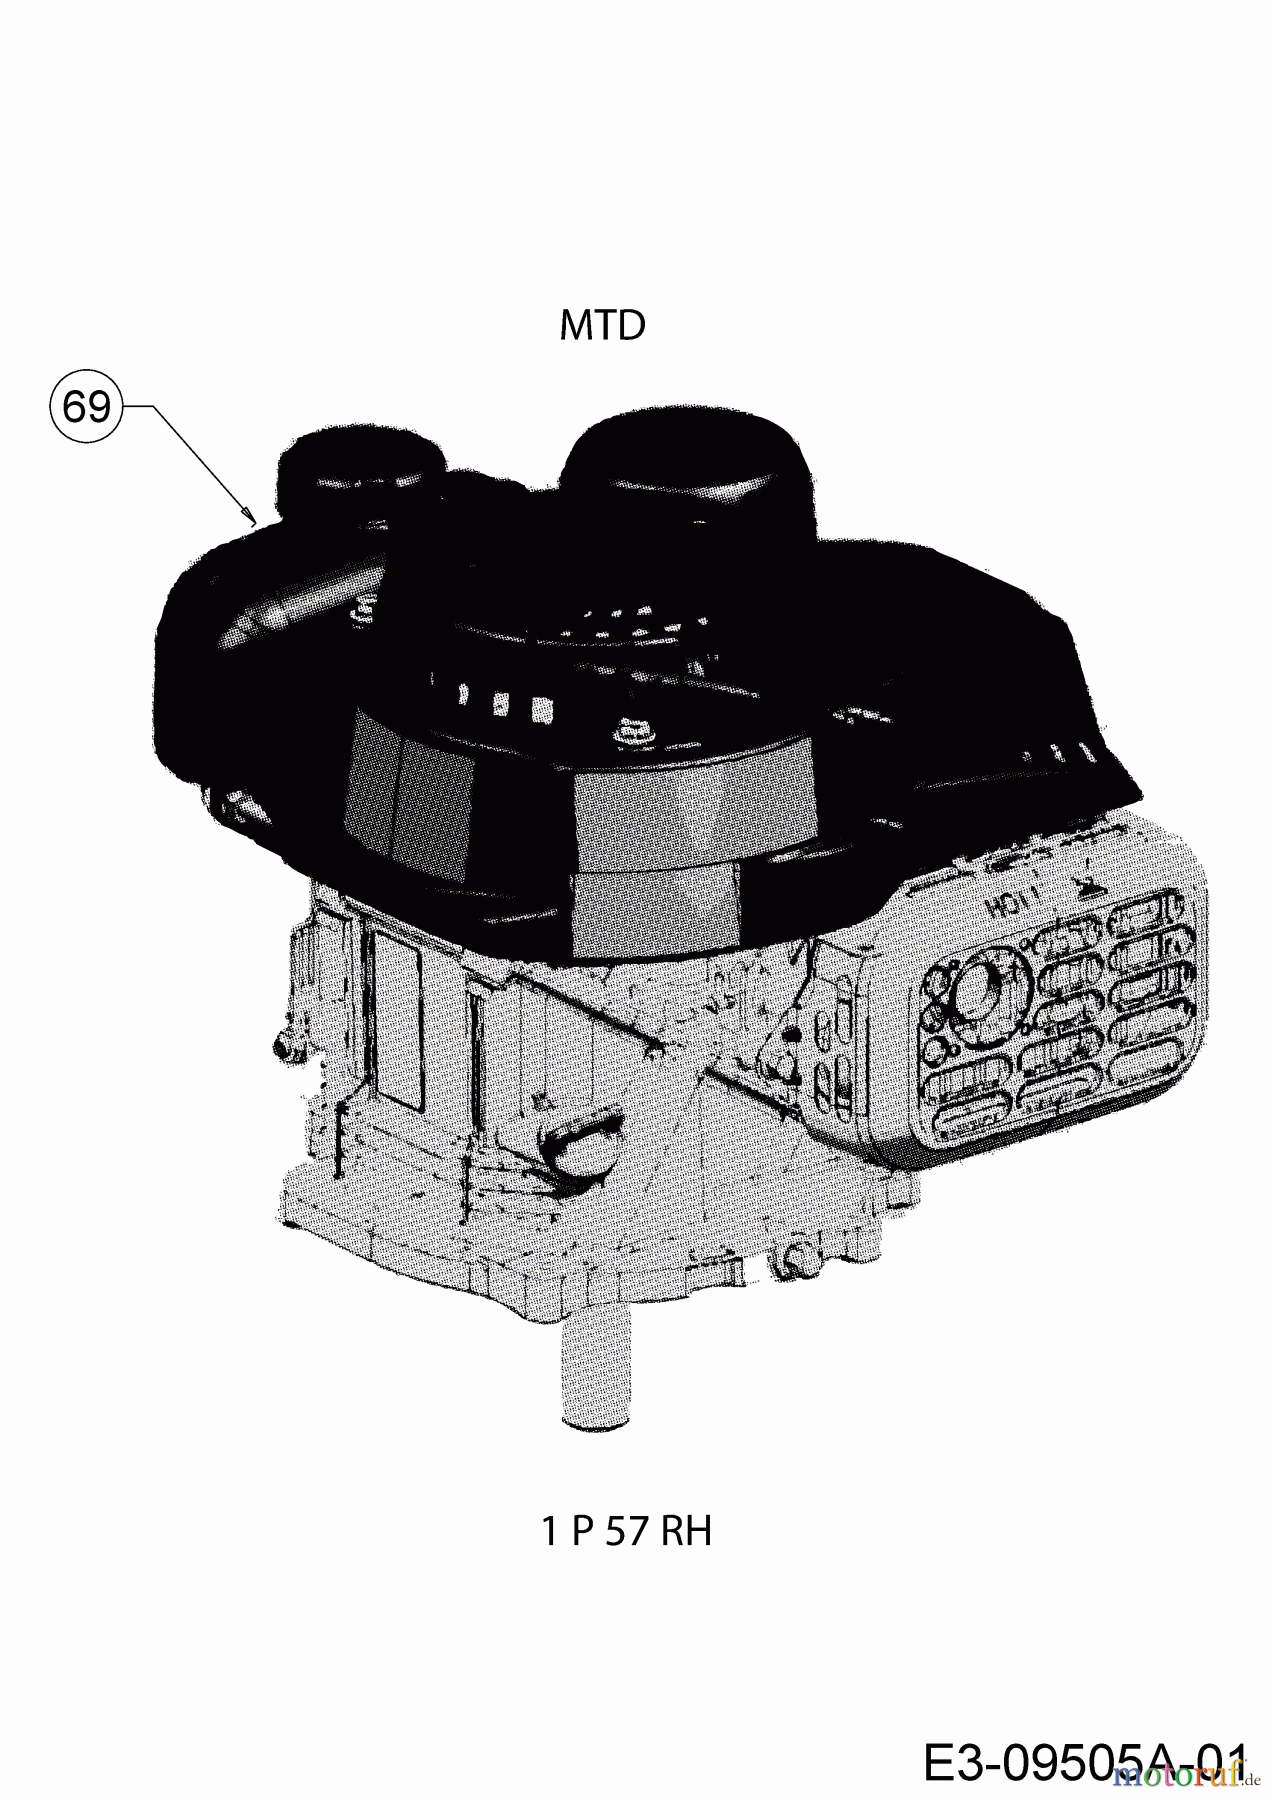  MTD Petrol mower Smart 46 PO 11C-TASJ600 (2020) Engine MTD